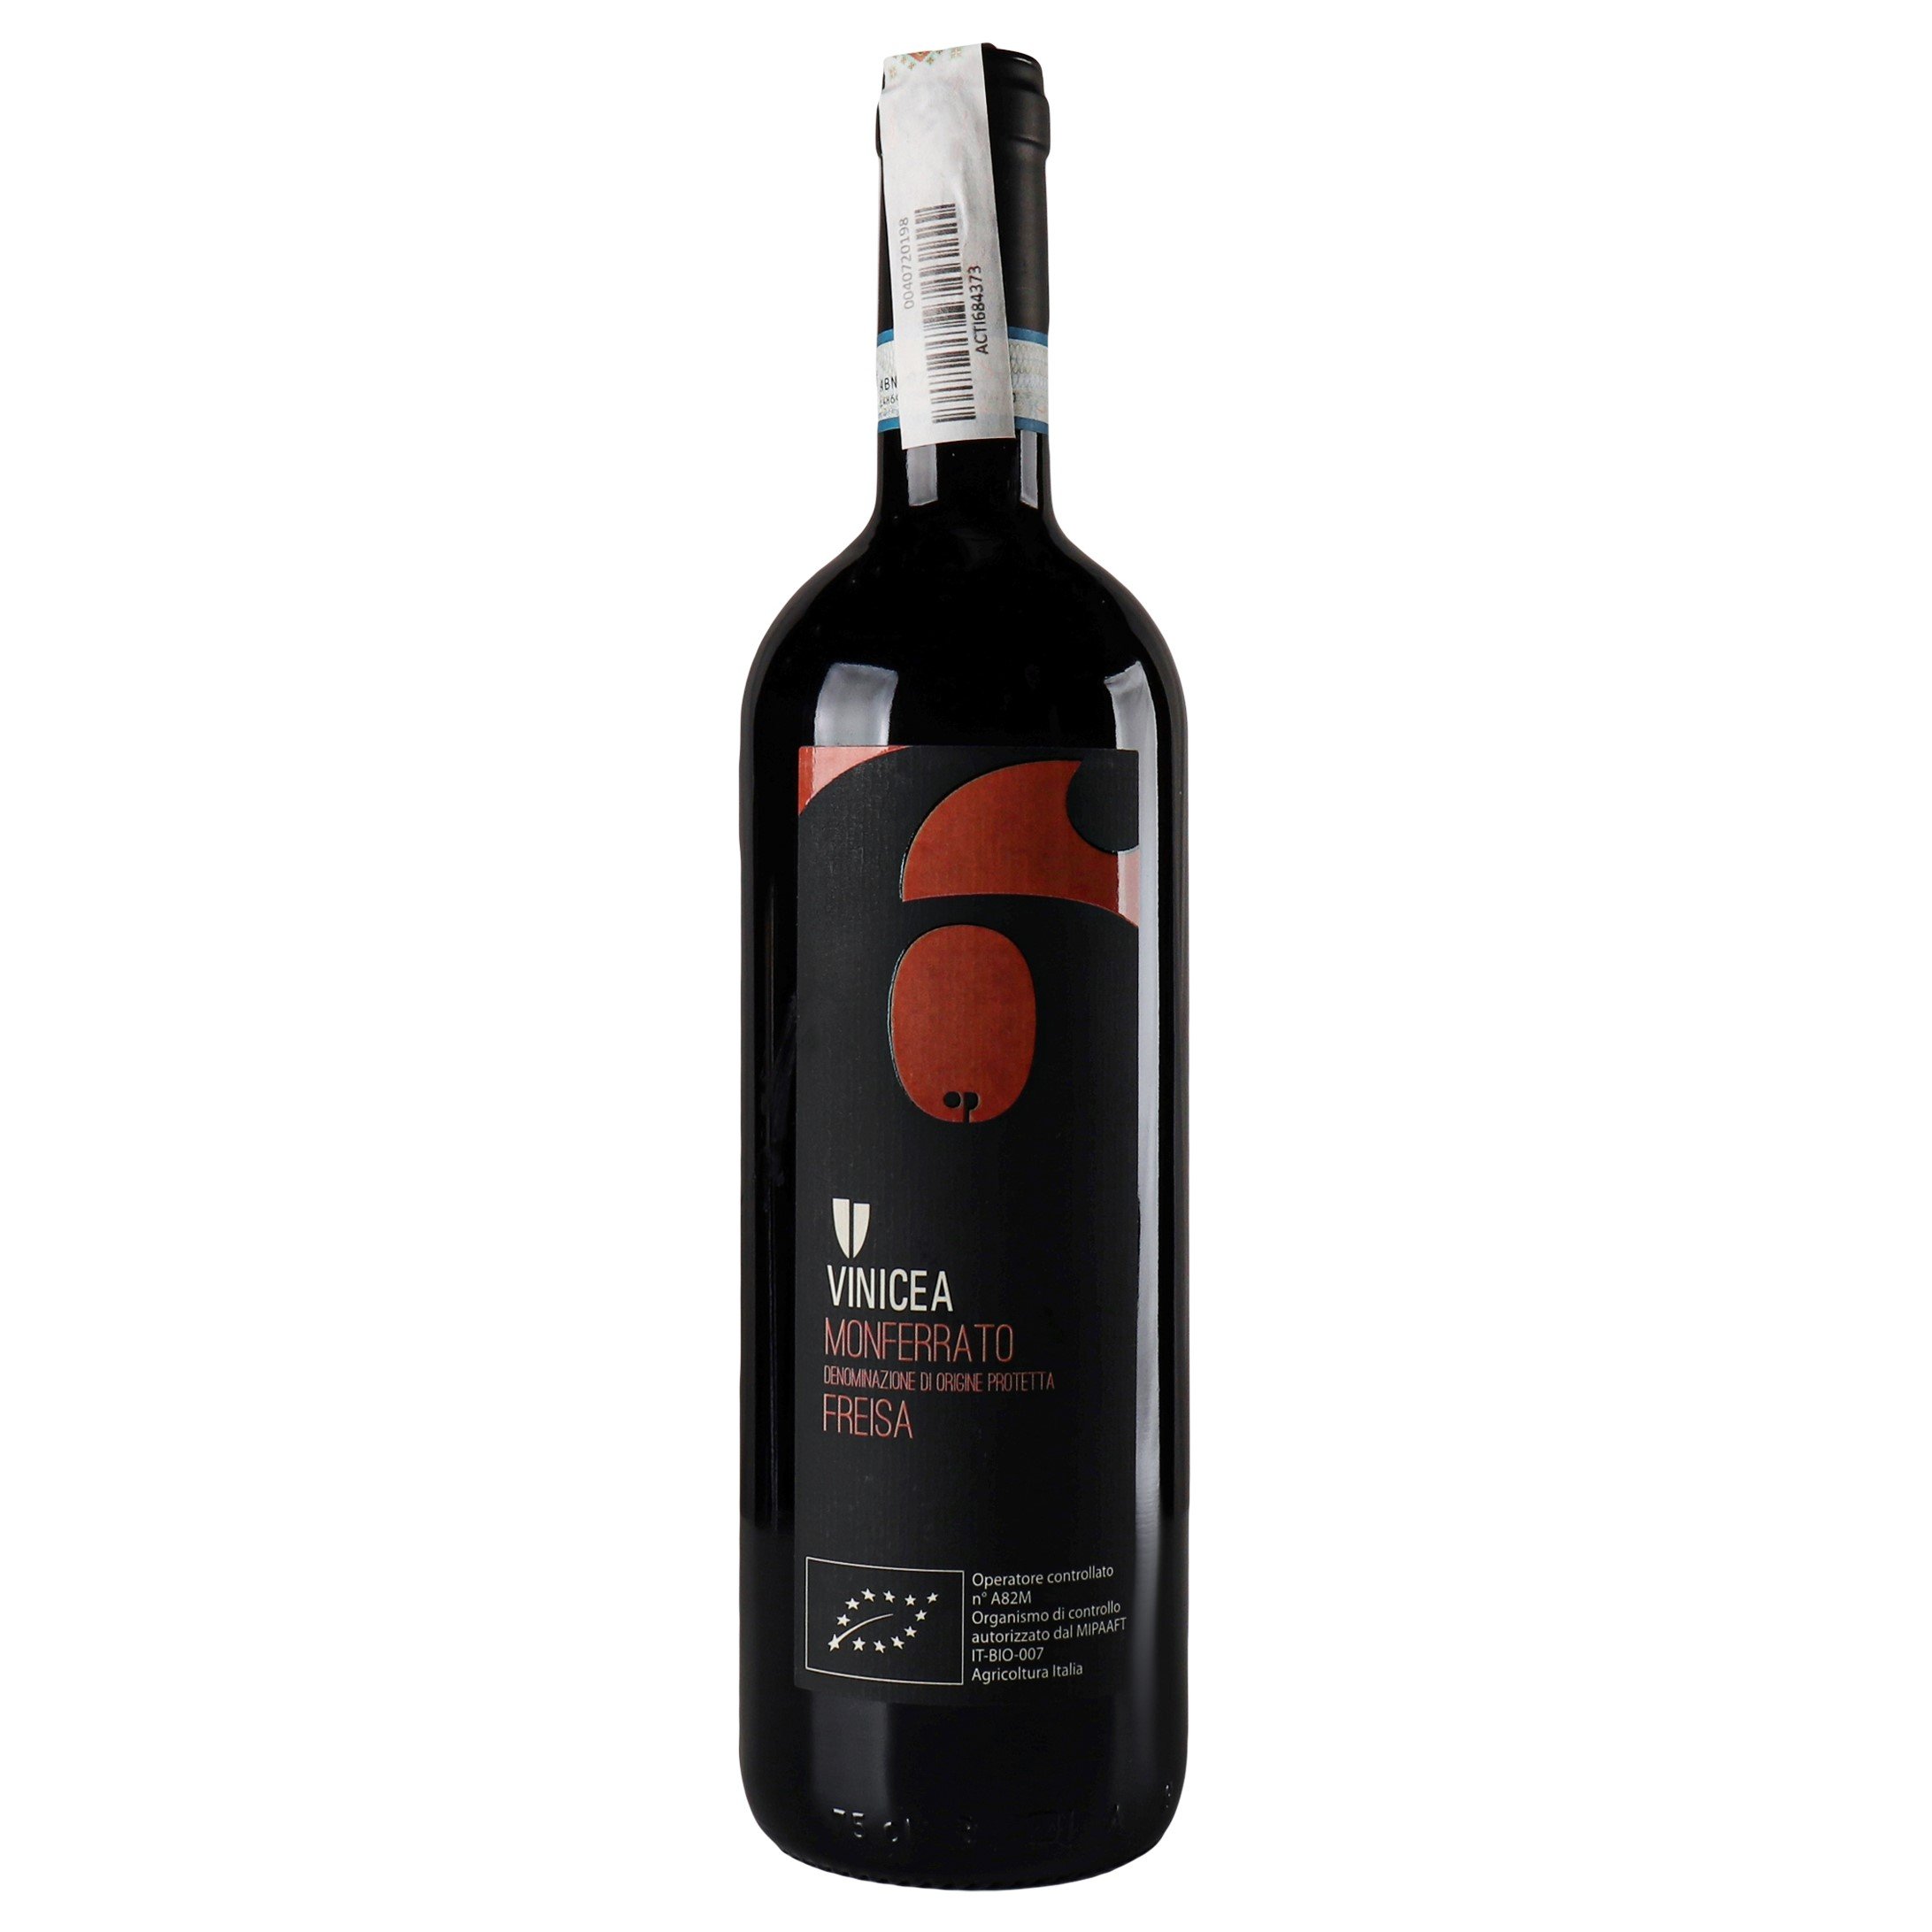 Вино Vinicea Op 6 Monferrato Freisa 2016 DOP, красное, сухое, 14%, 0,75 л (890106) - фото 1